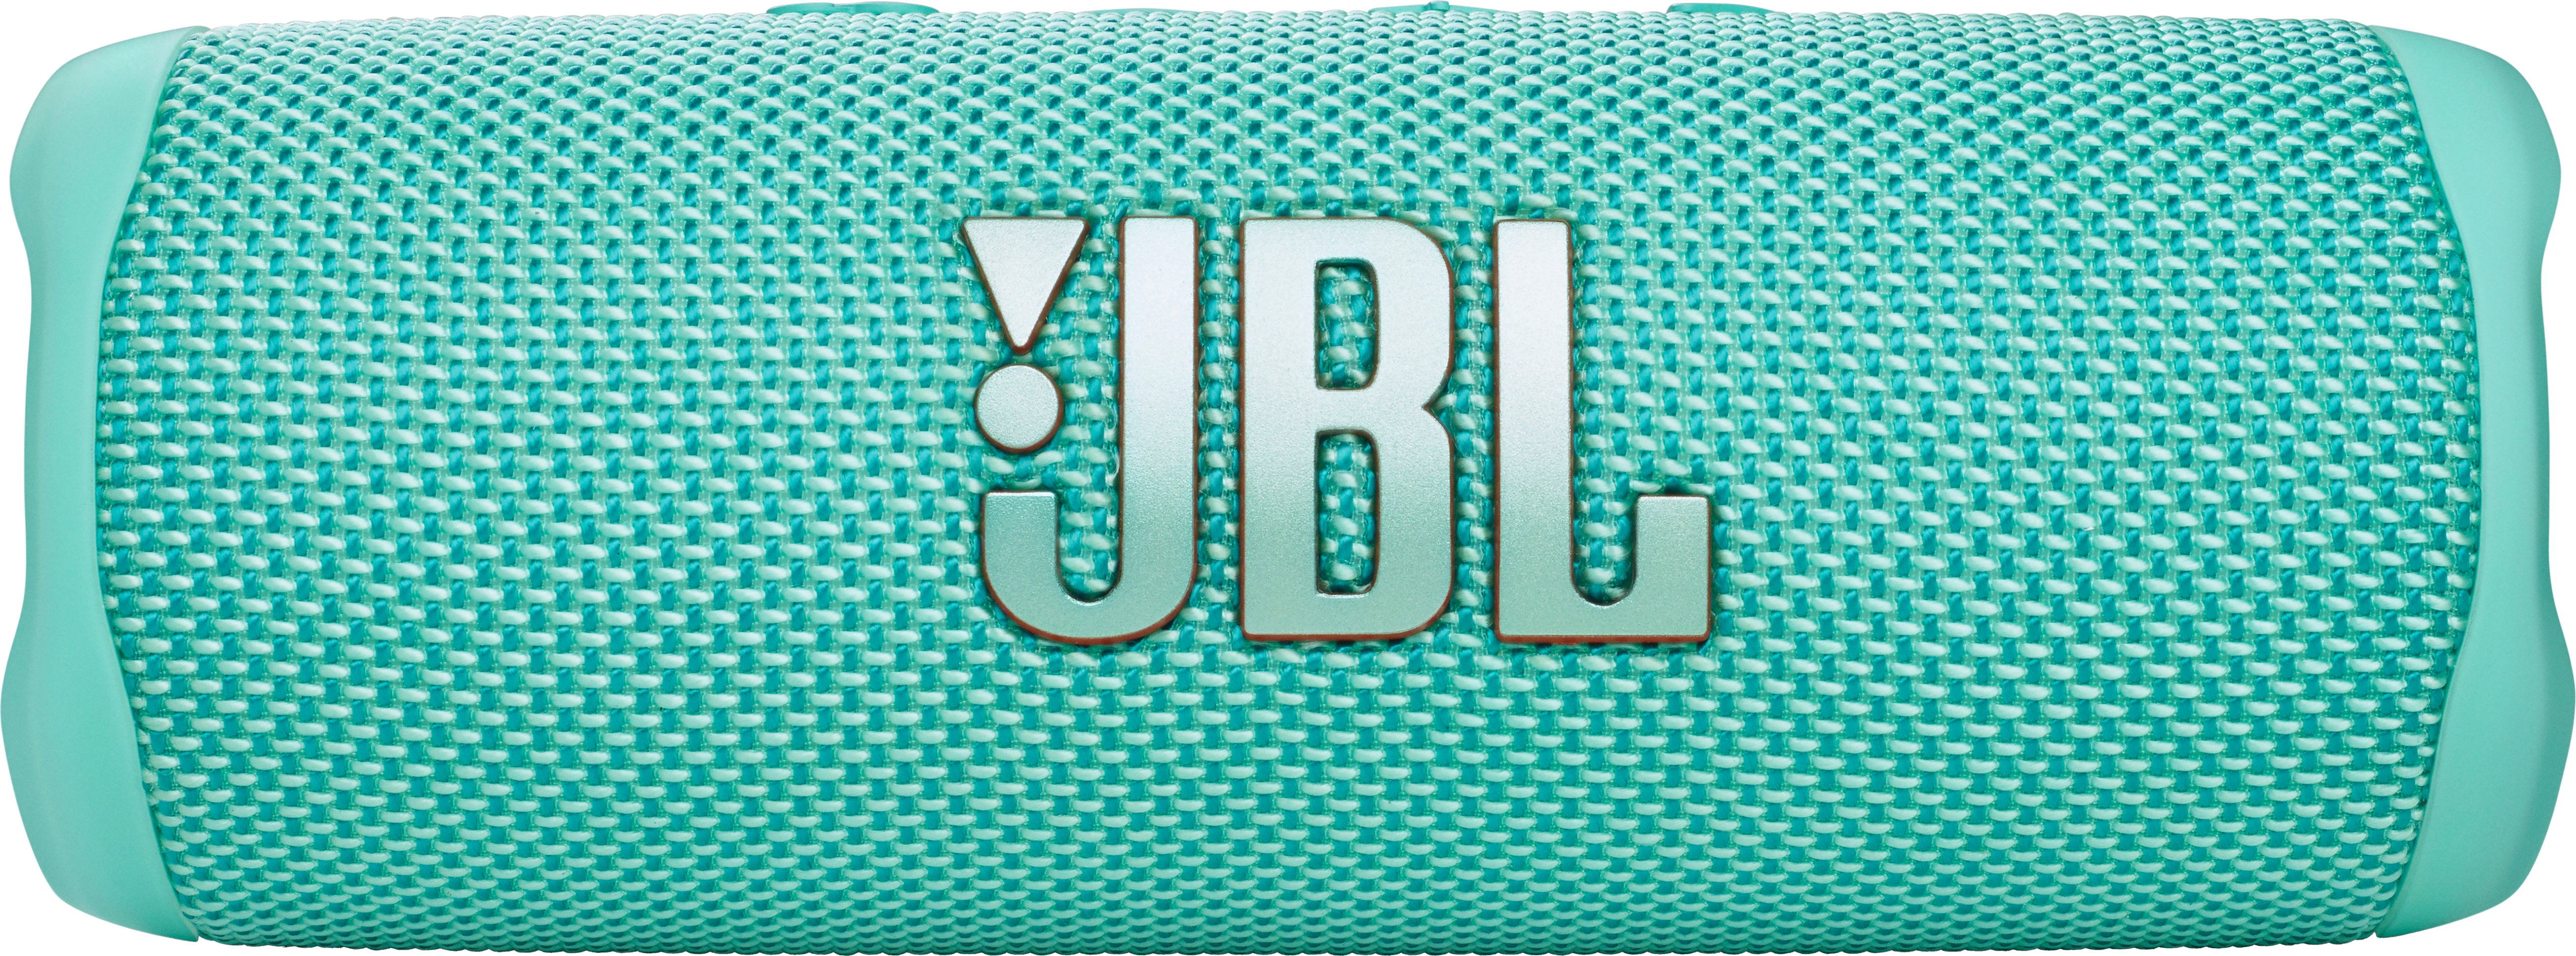 JBL FLIP6 Portable Waterproof Speaker Teal JBLFLIP6TEALAM - Best Buy